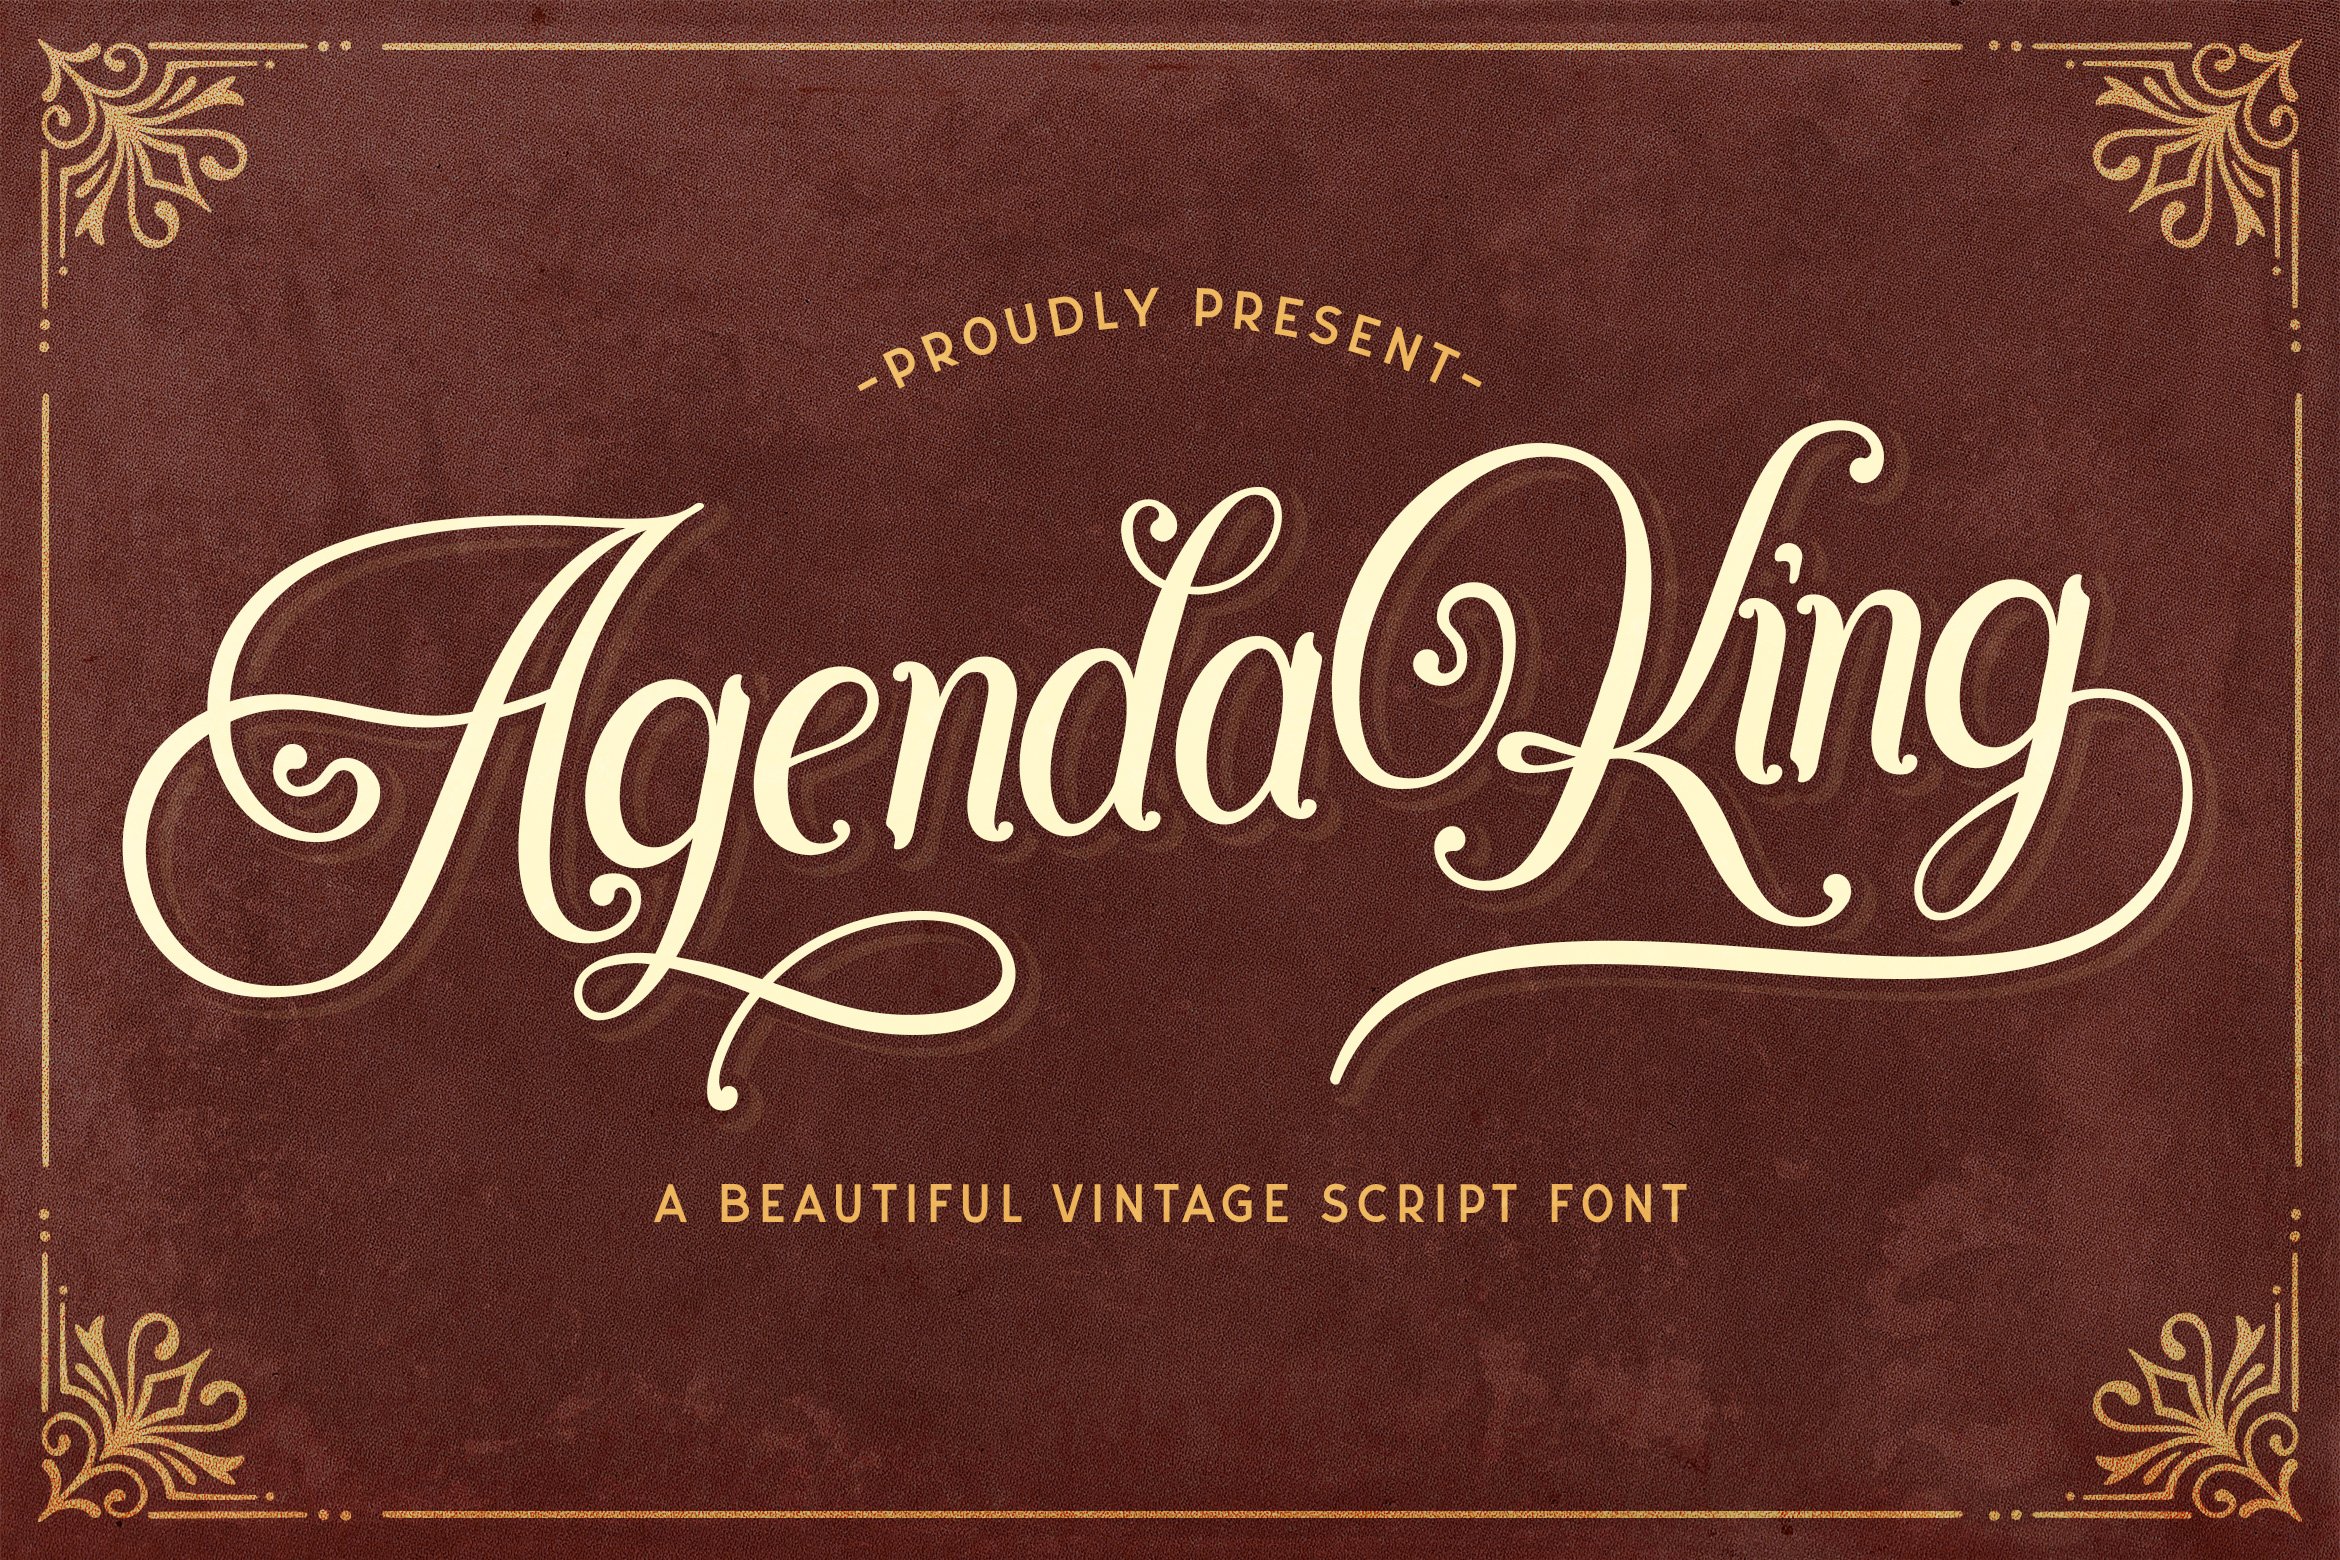 Agenda King - Vintage Script Font cover image.